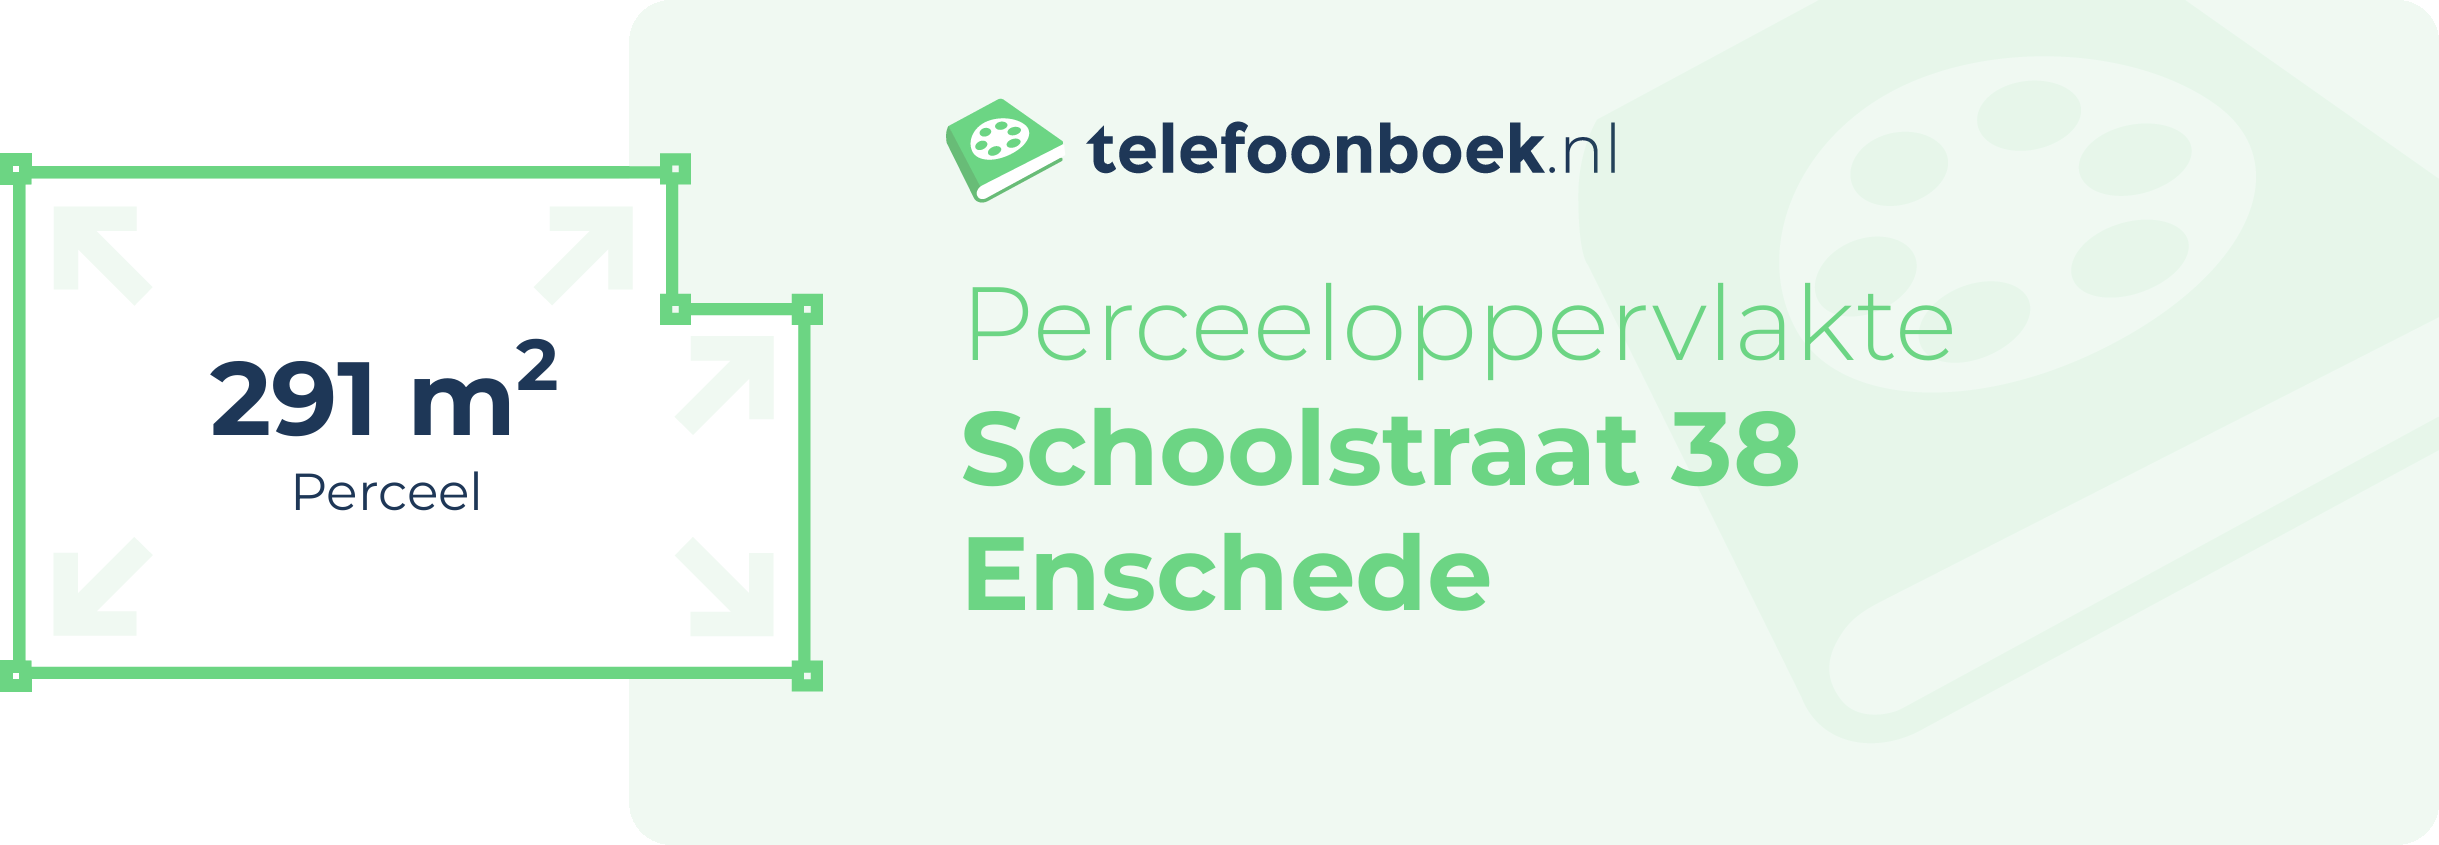 Perceeloppervlakte Schoolstraat 38 Enschede